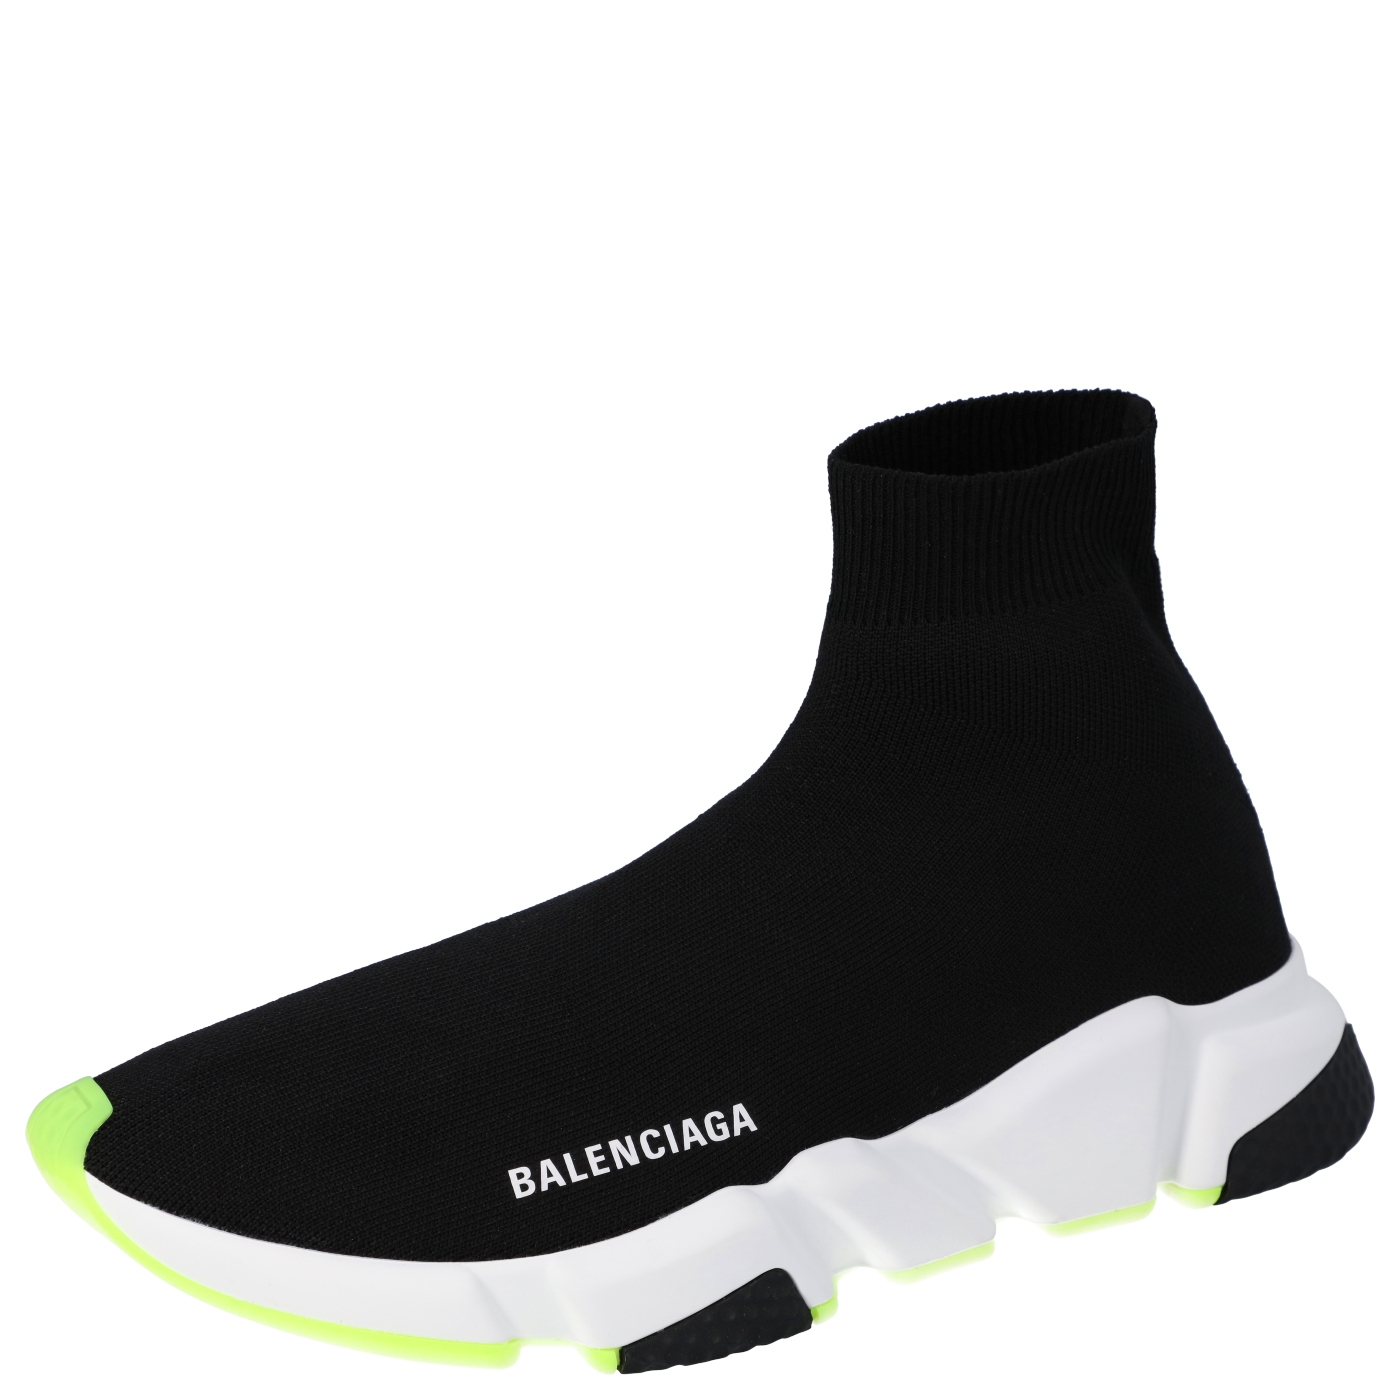 Balenciaga Black/Neon Green Knit Speed High Top Sneakers Size EU 41